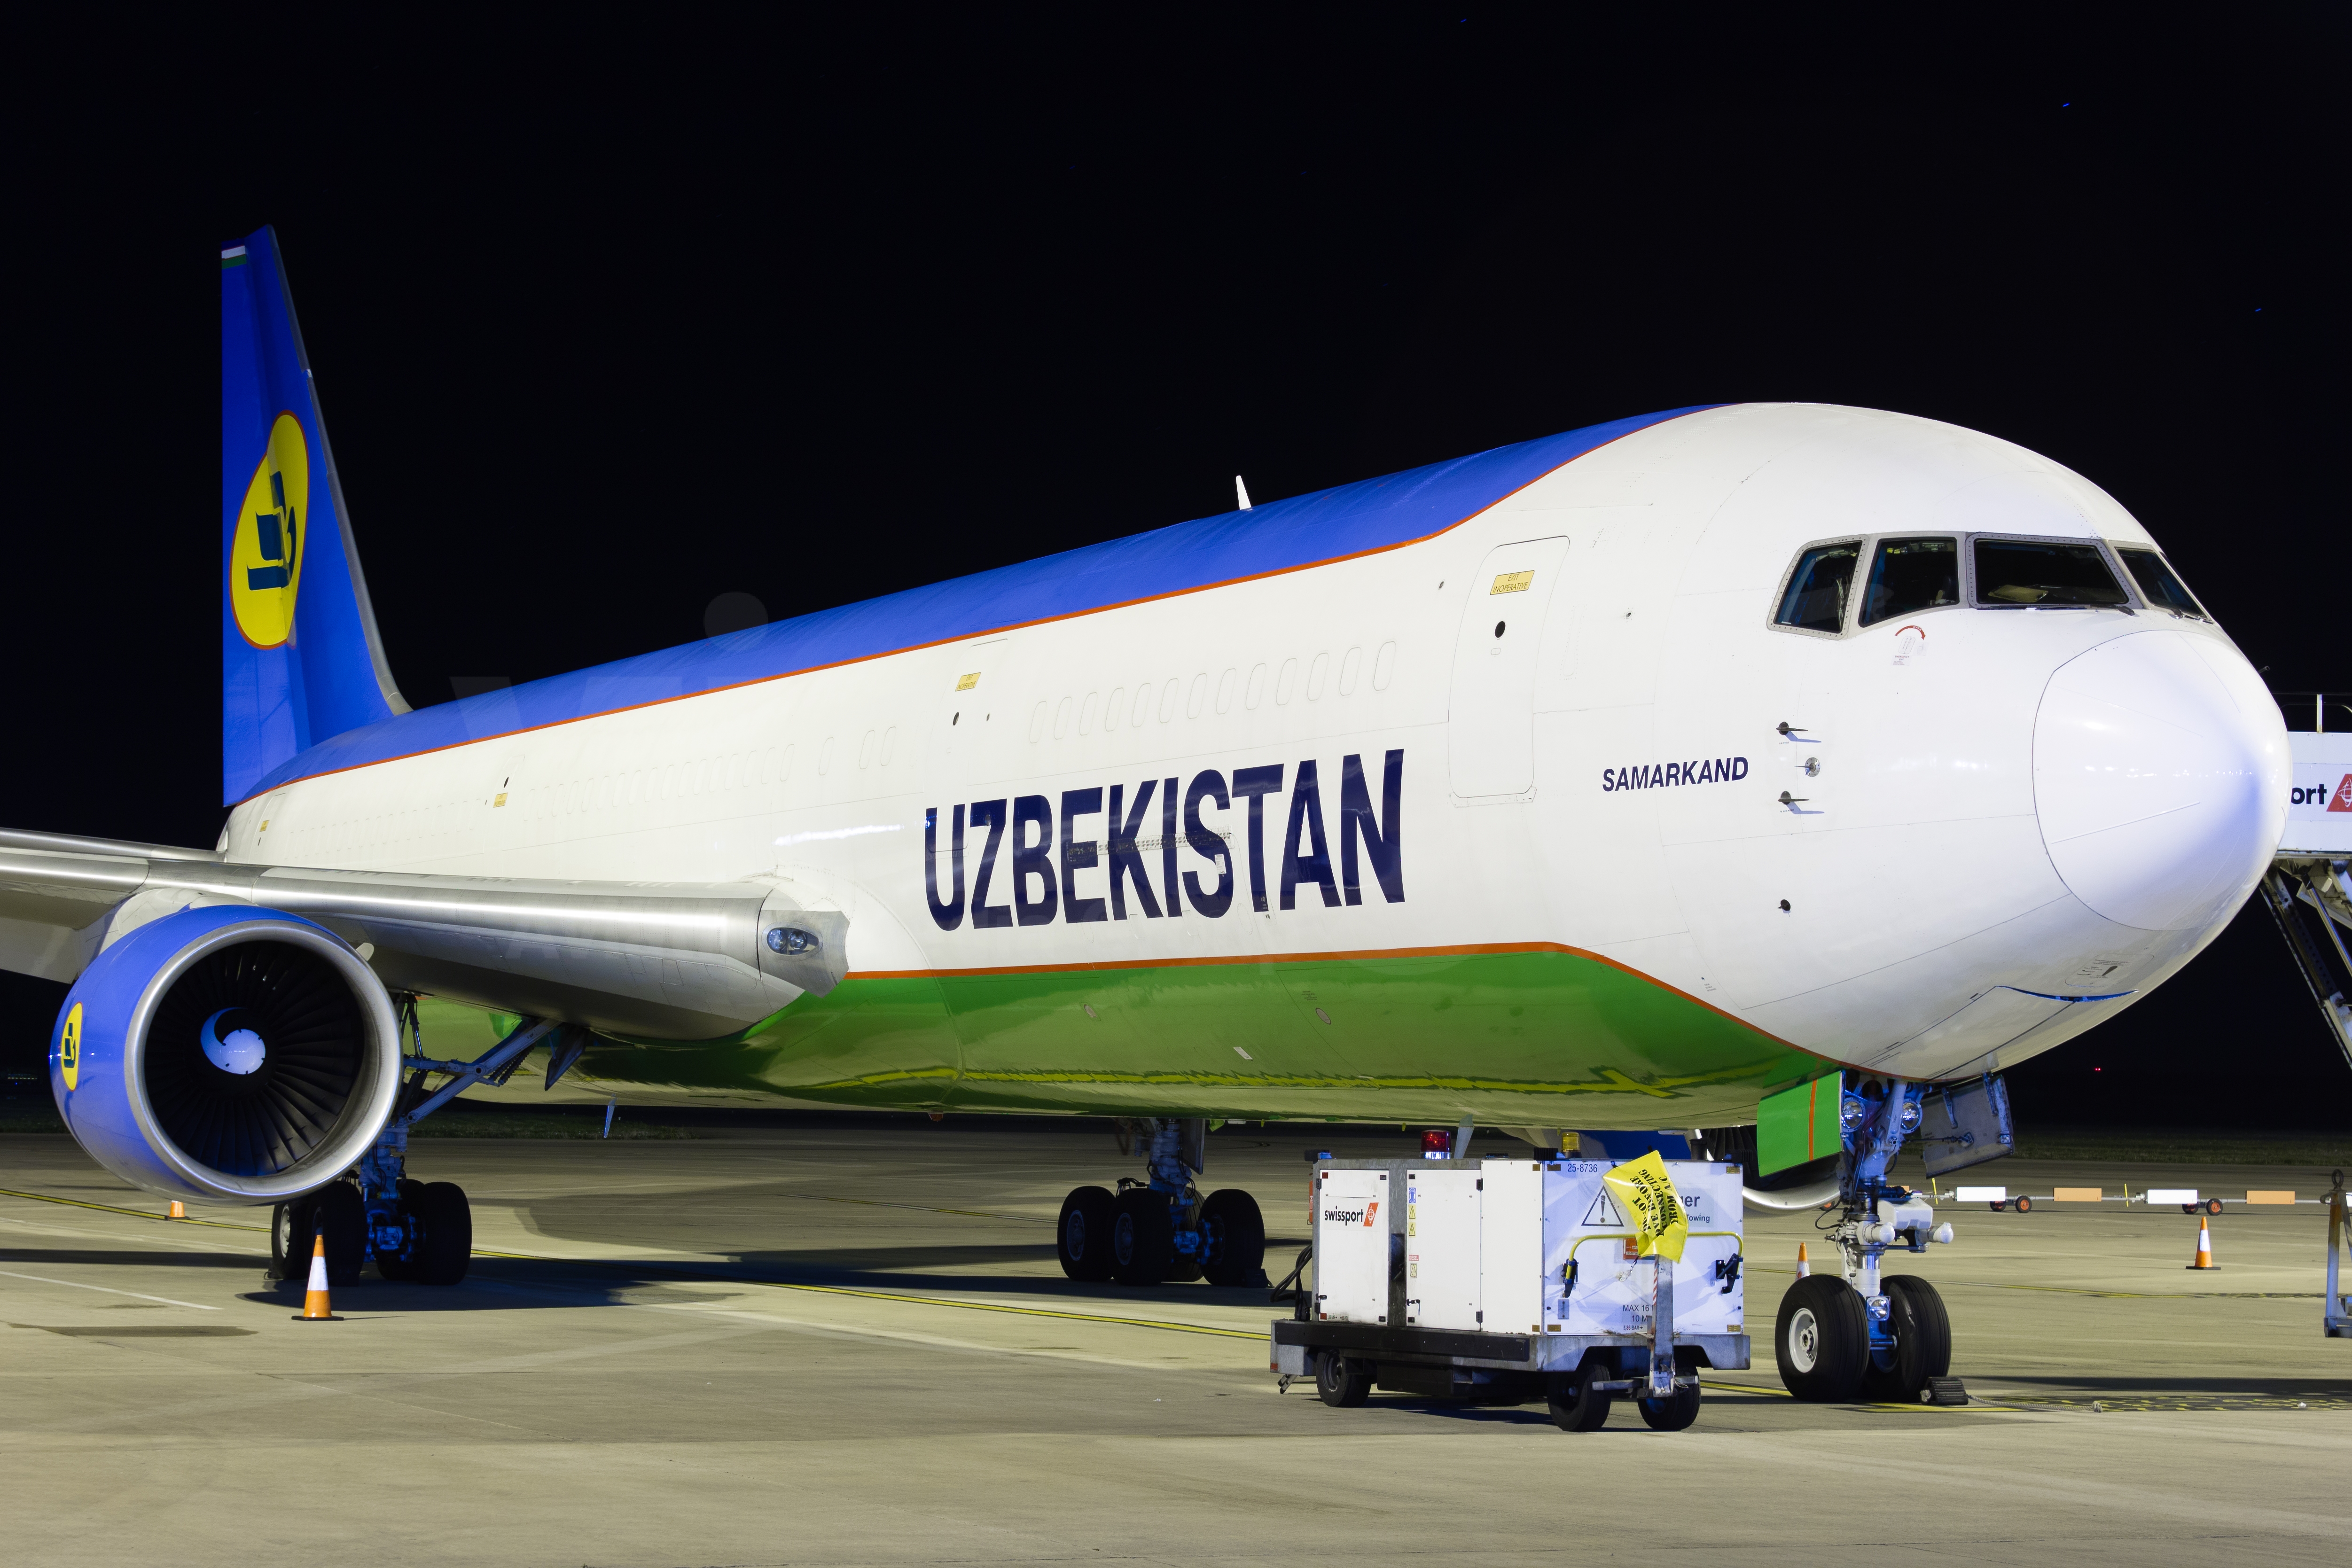 Авиакомпания узбекские авиалинии. информация, фото, схема салона, карта маршрутов, видео, купить билеты.